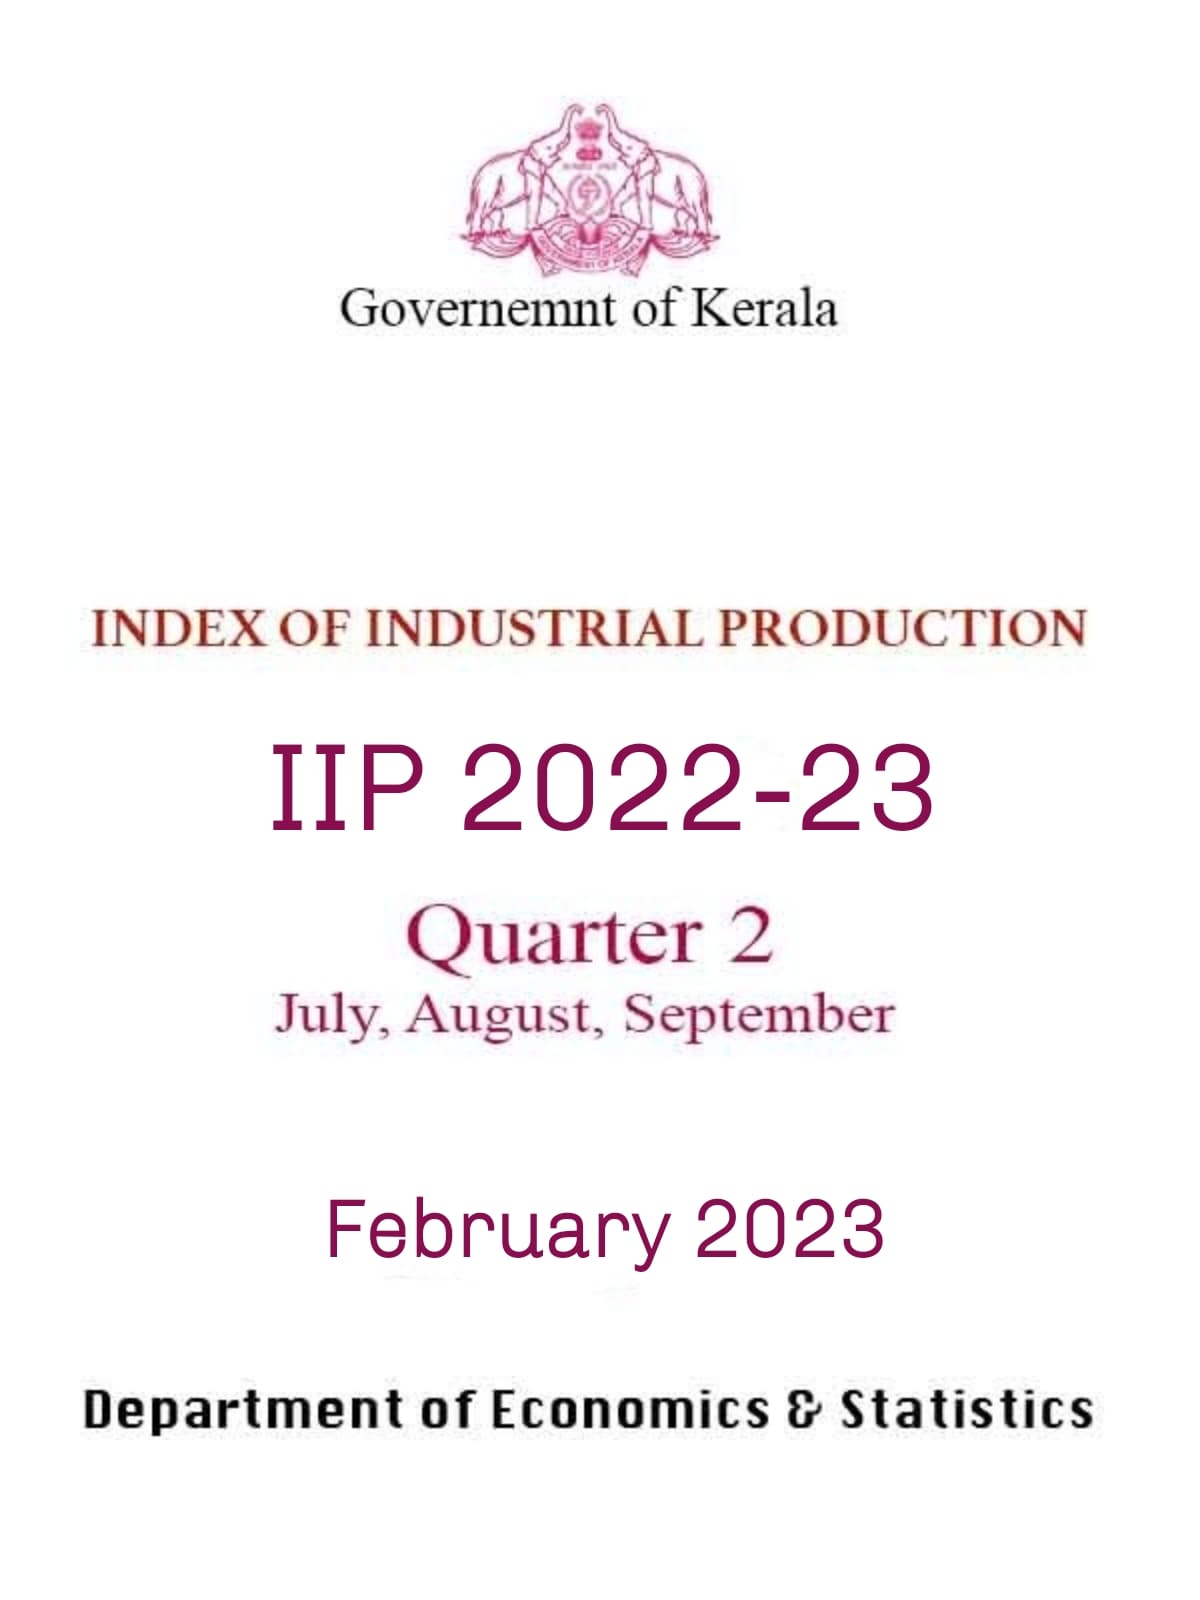 IIP report 2nd Quarter 2022-23